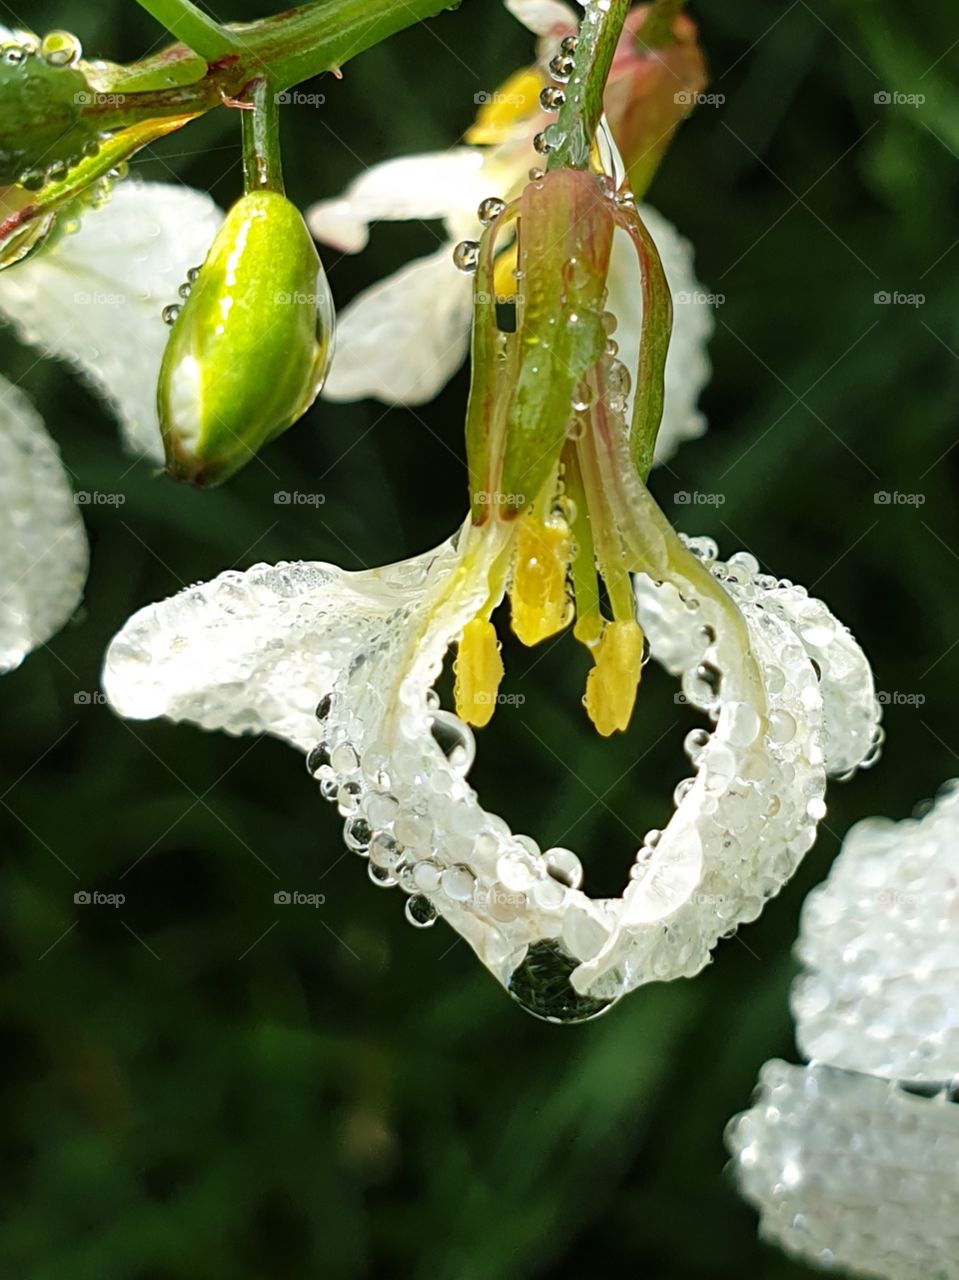 Radishflowers with dew.